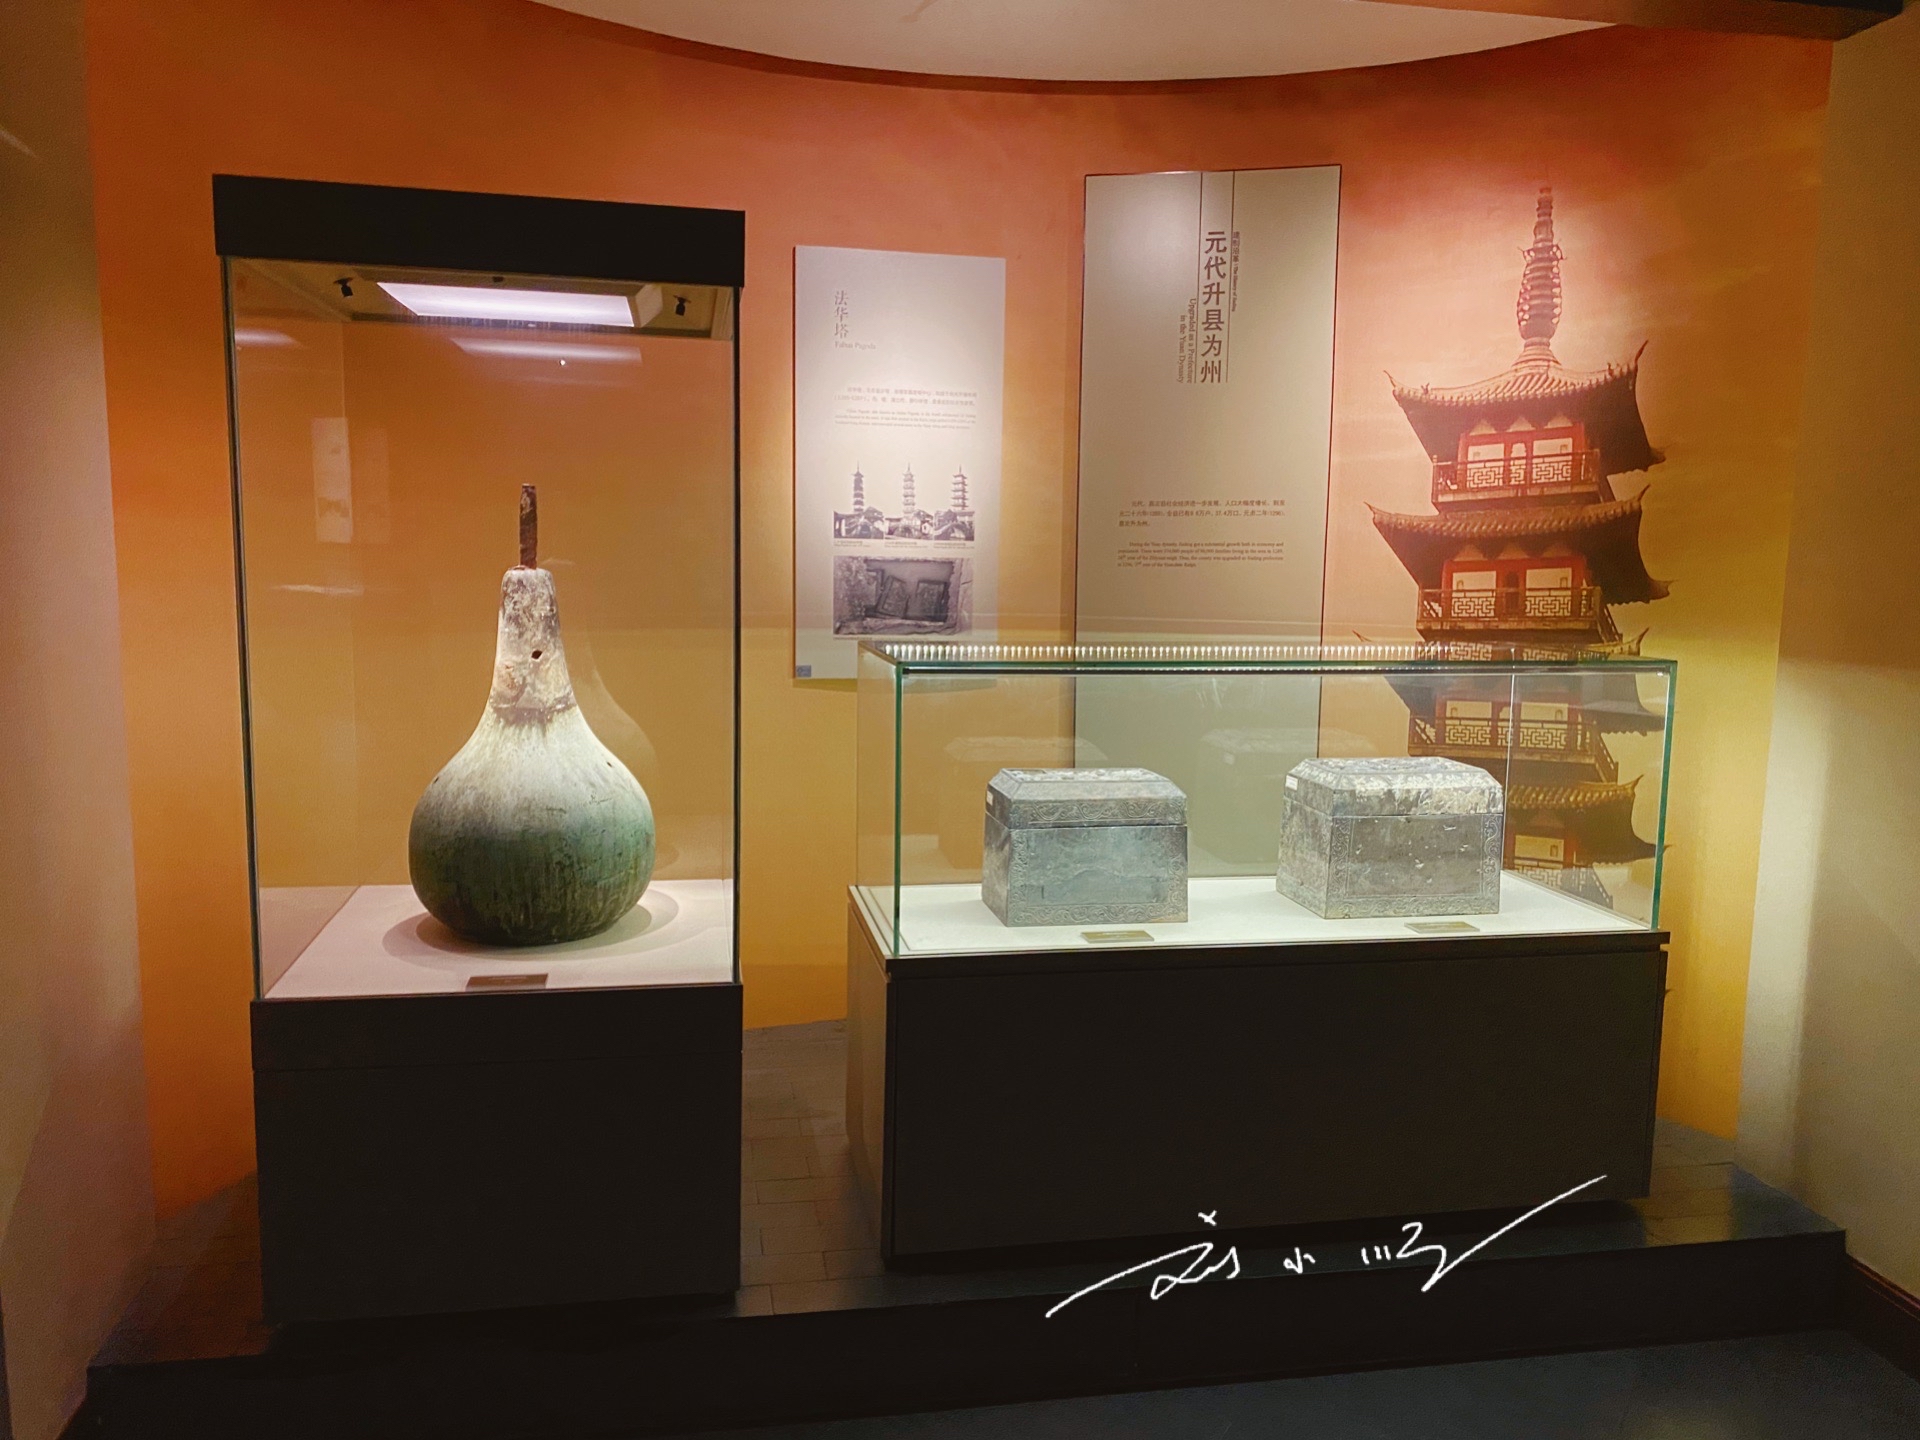 另外,嘉定博物馆还下辖有全国重点文物保护单位嘉定孔庙,上海市